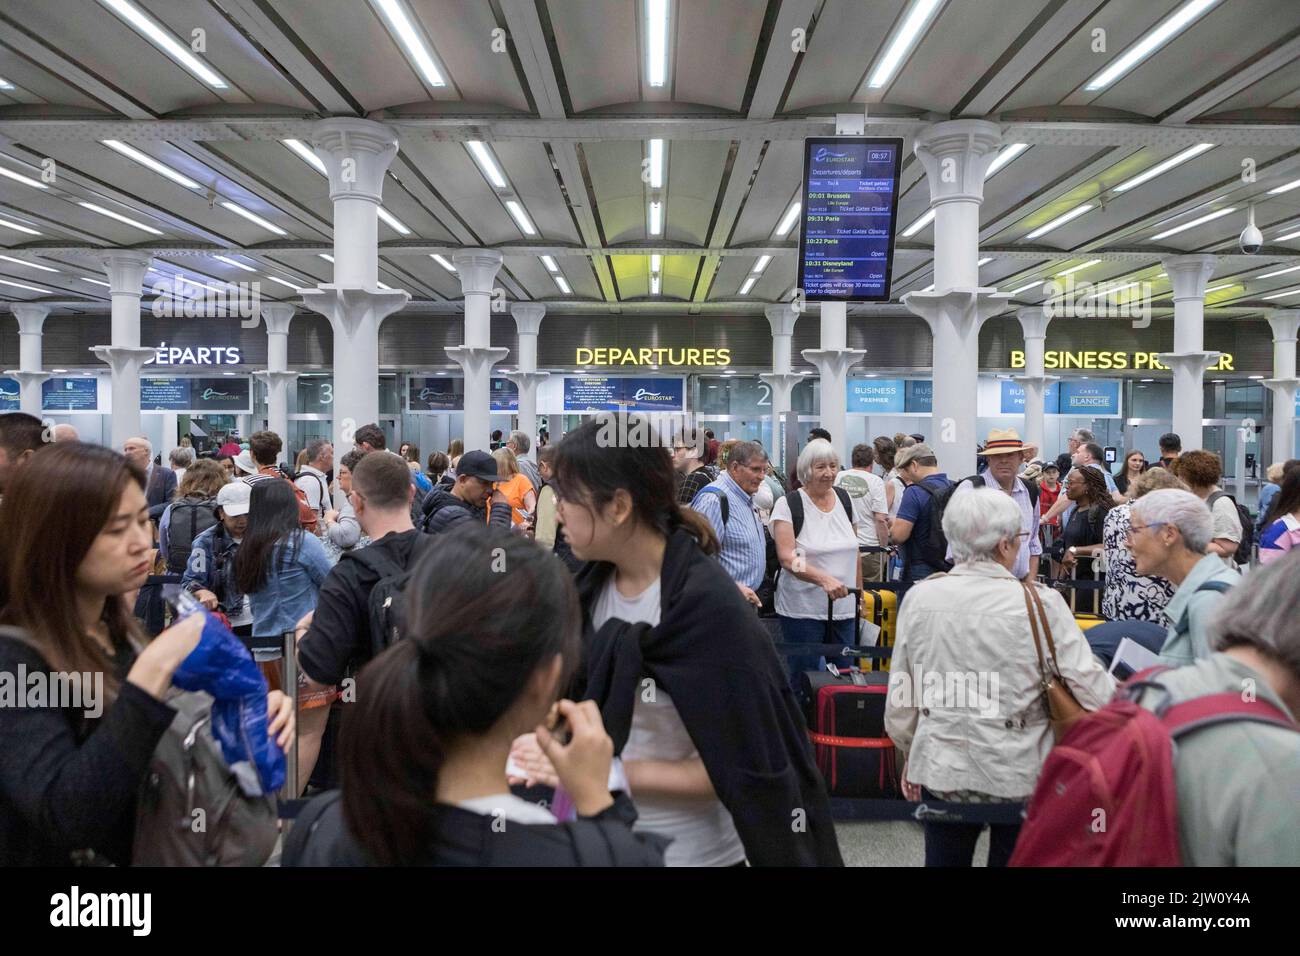 I vacanzieri hanno visto affollarsi la stazione di King’s Cross St. Pancras Eurostar durante il fine settimana delle vacanze in banca. Immagine scattata il 27th ago 2022. © Belinda Jiao Foto Stock